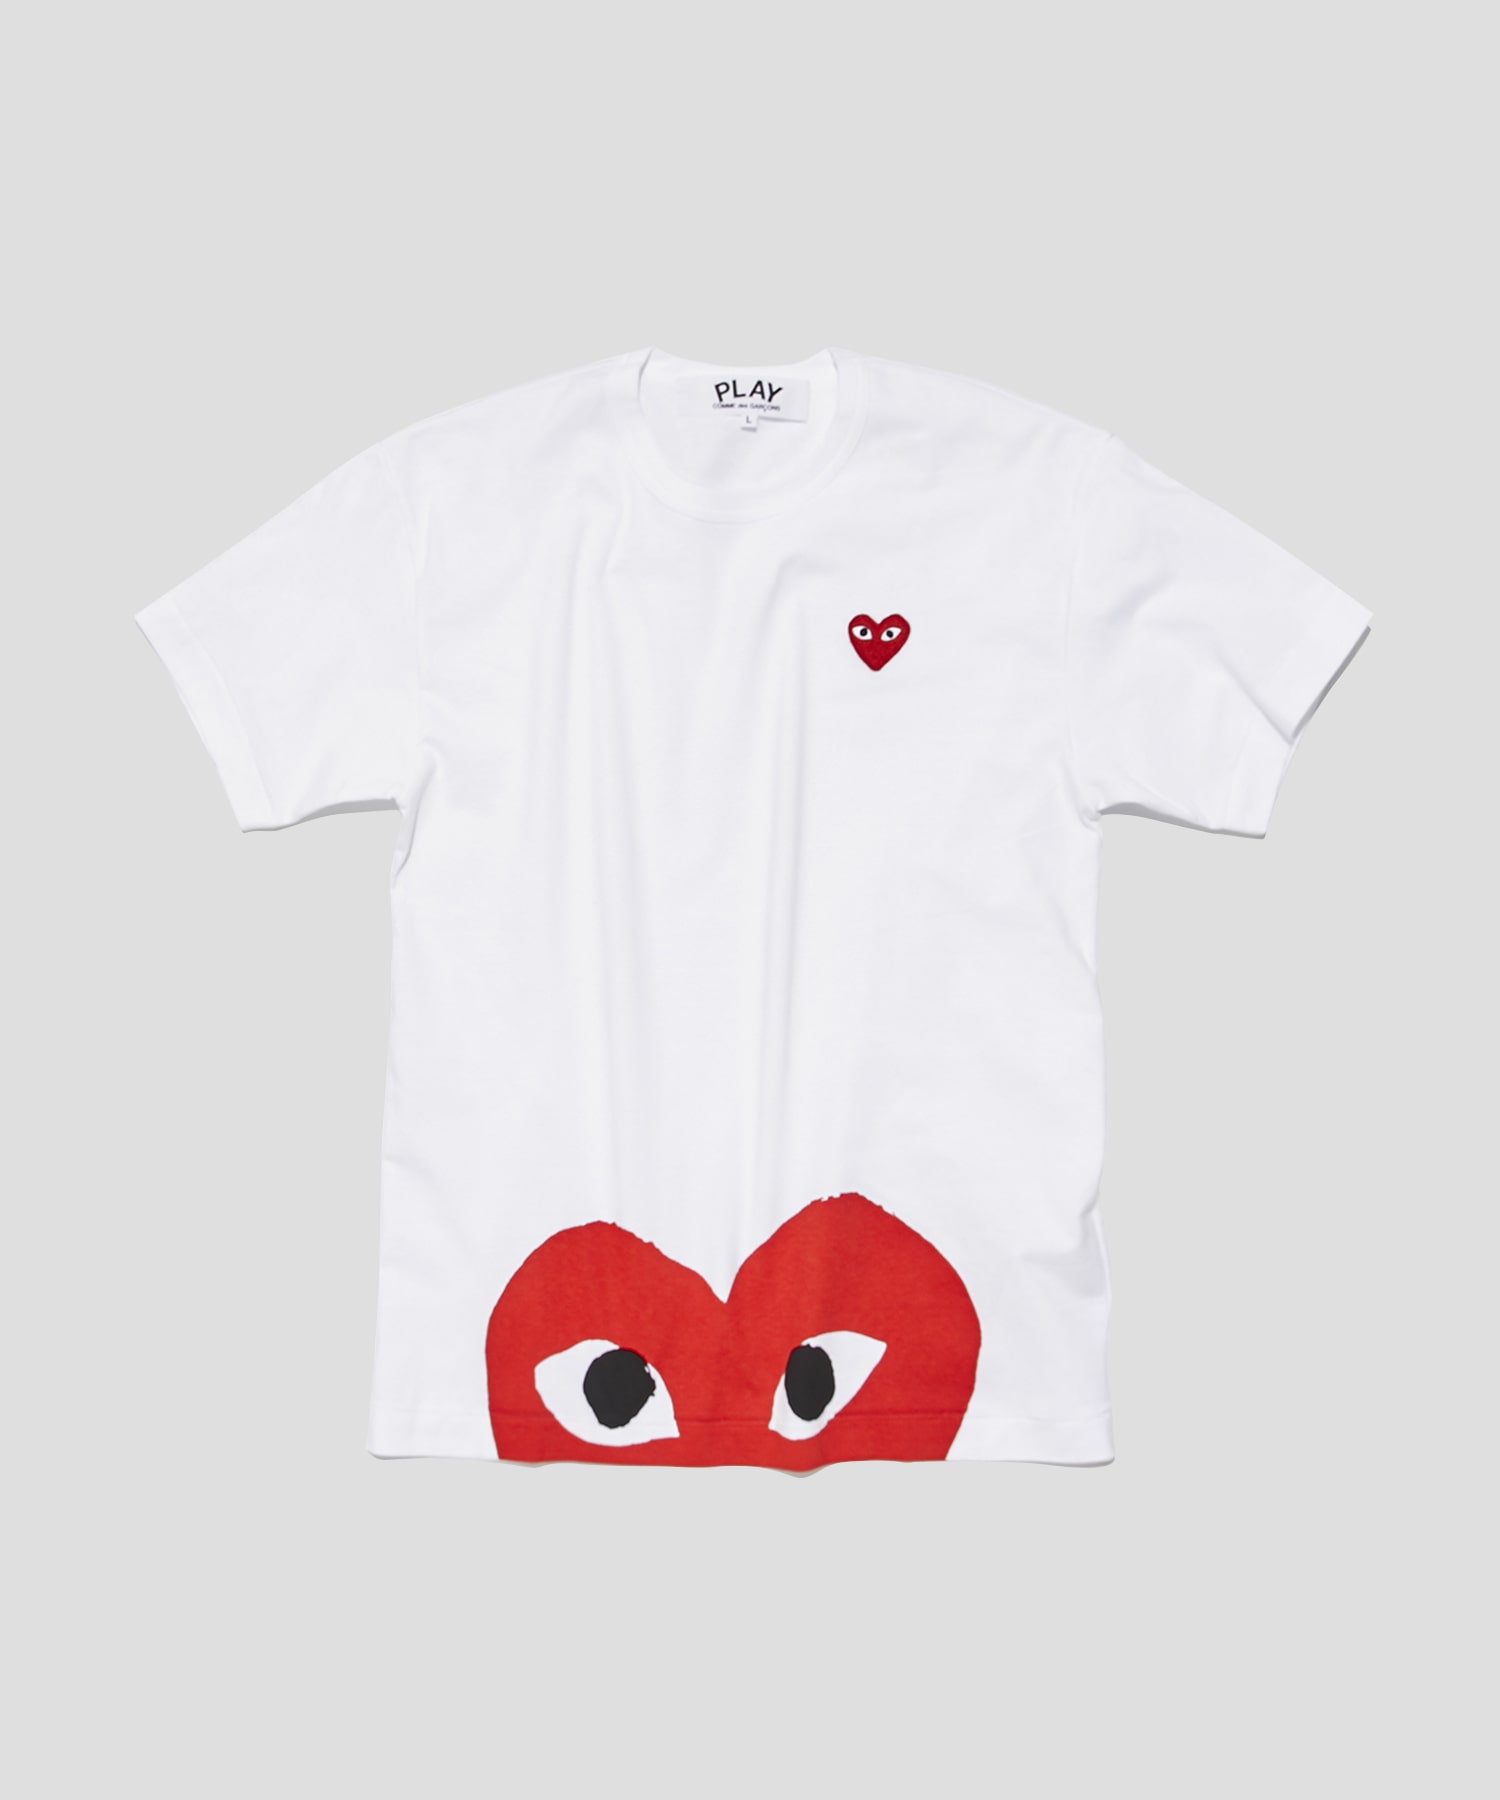 プレイコムデギャルソン RED HEART Tシャツ ホワイト Sサイズ